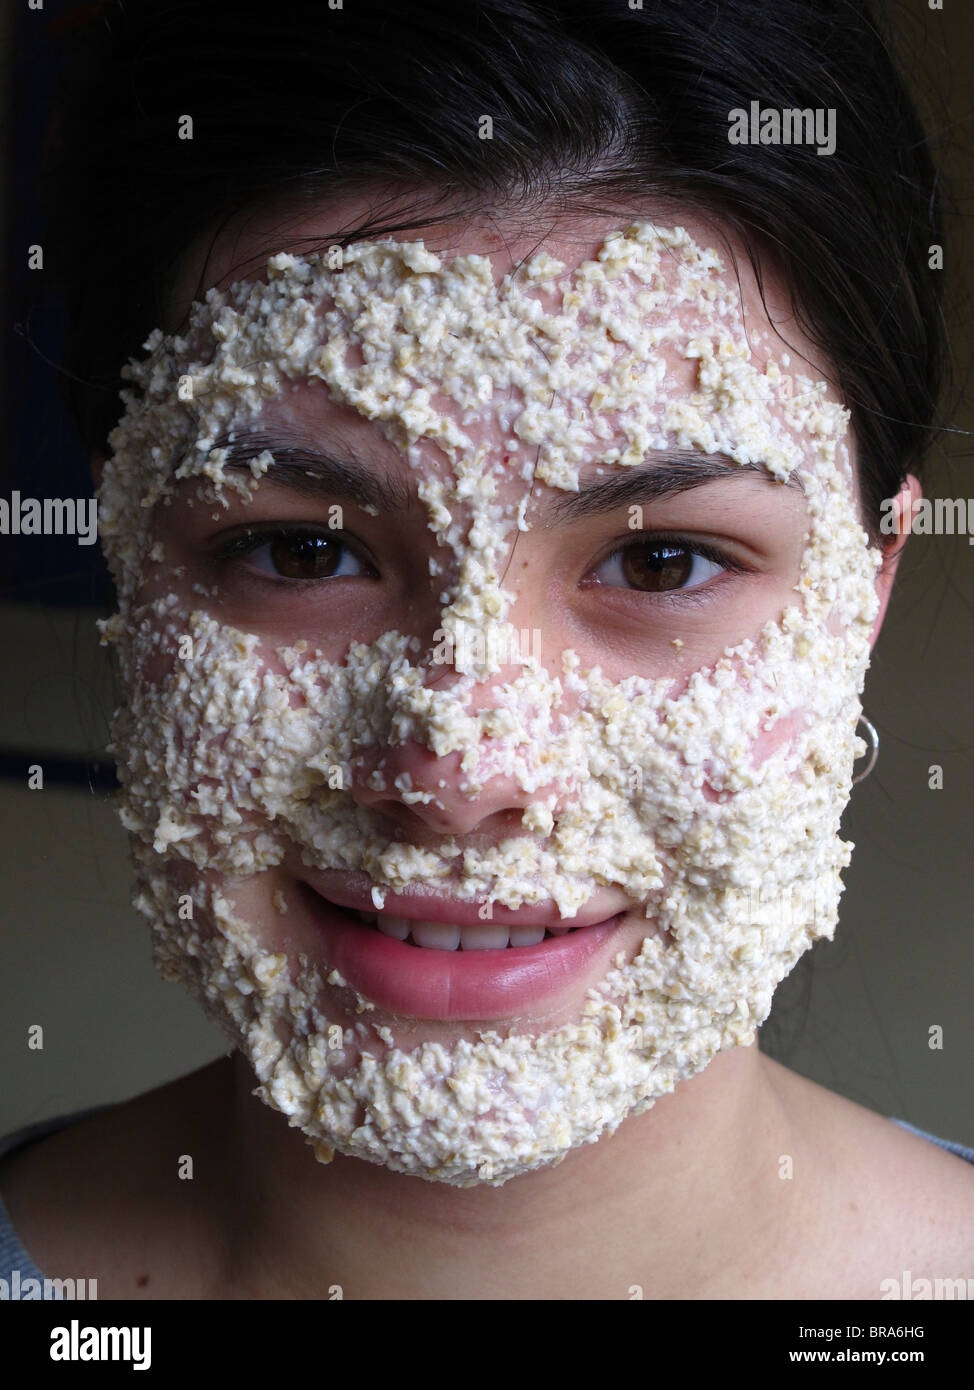 Adolescente utilizando una máscara de avena para limpiar la piel Foto de stock